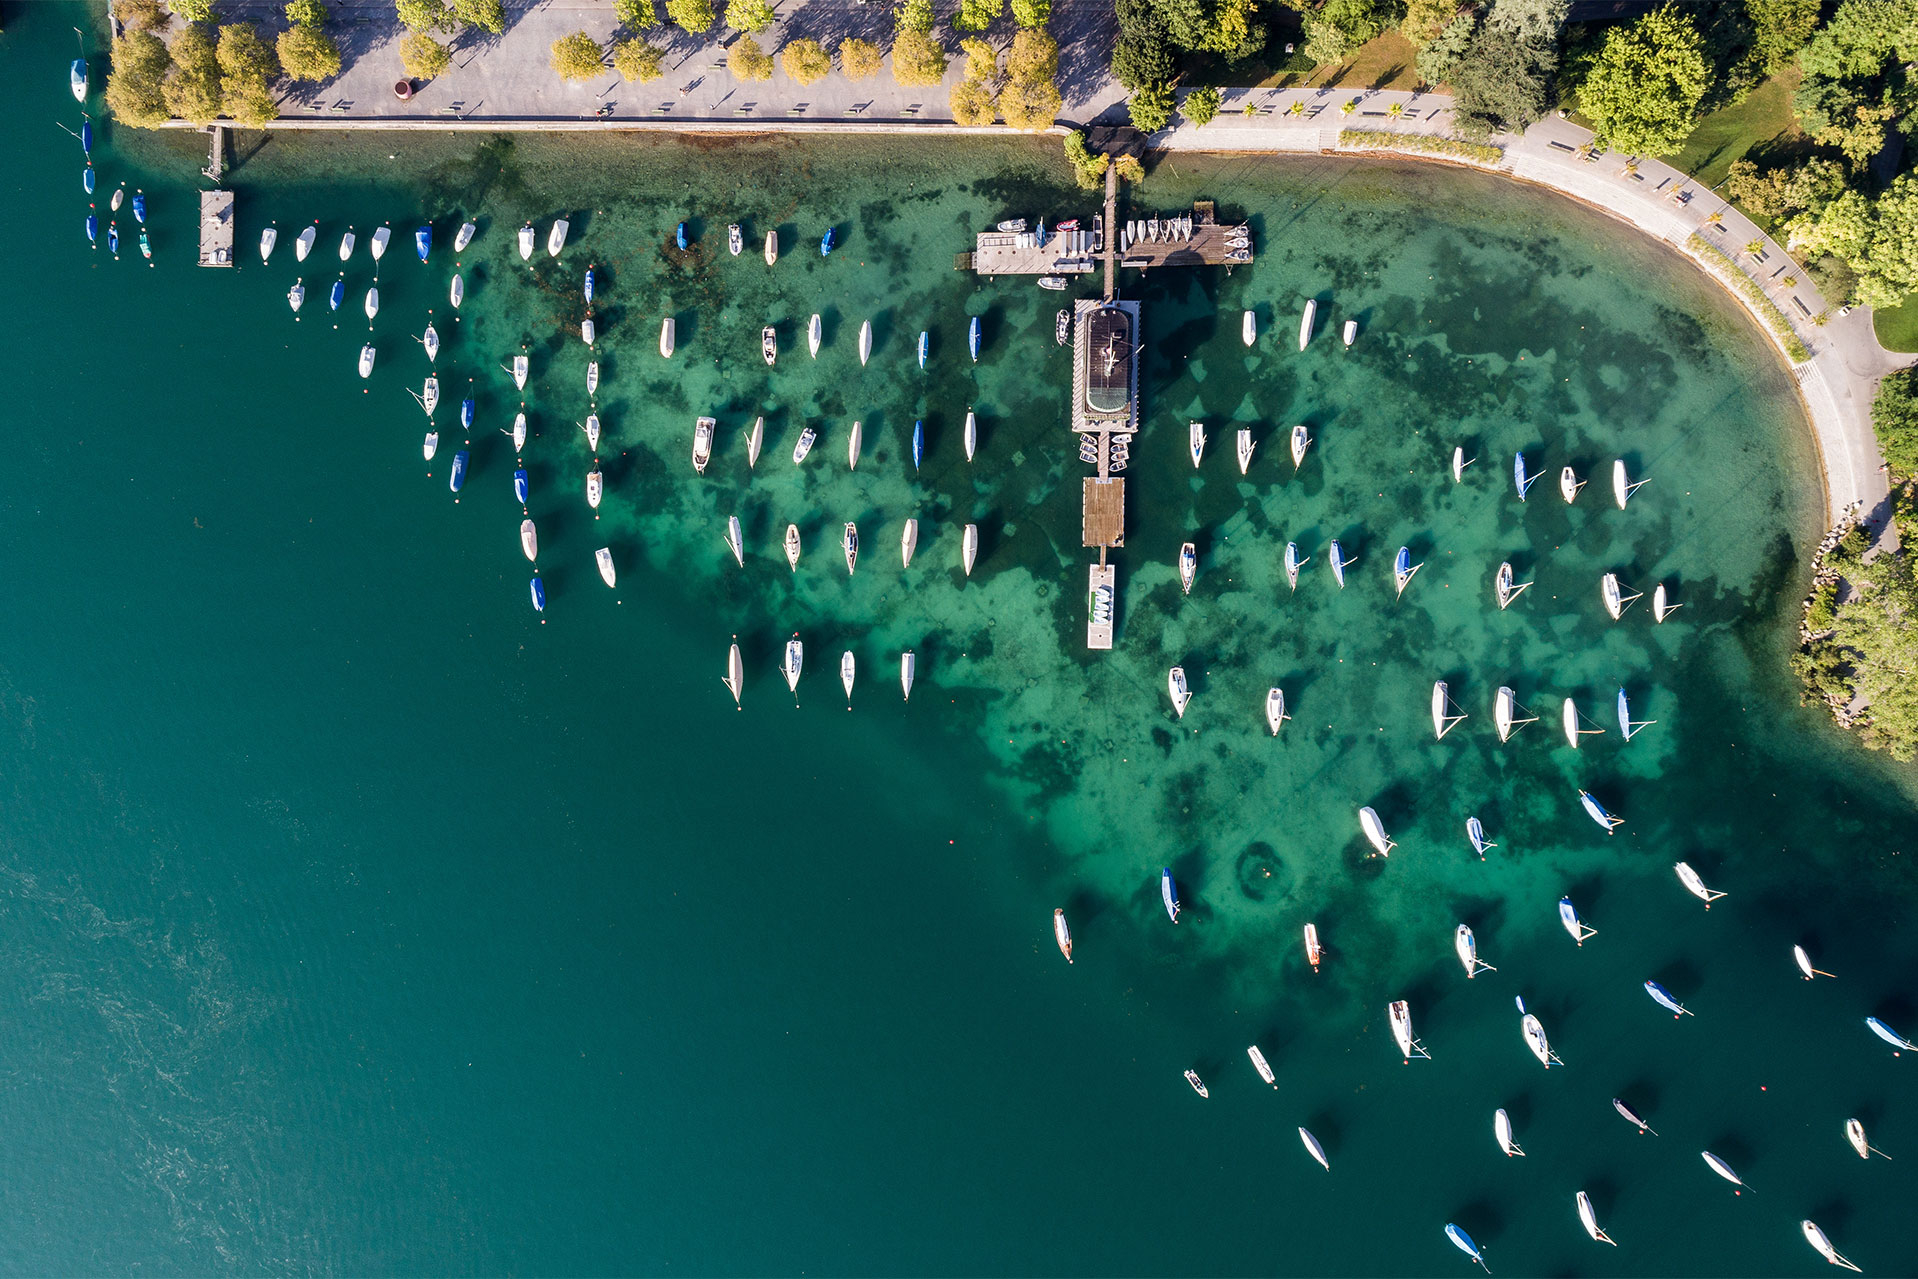 Vista aerea di barche attraccate a un molo in una giornata di sole a Zurigo.